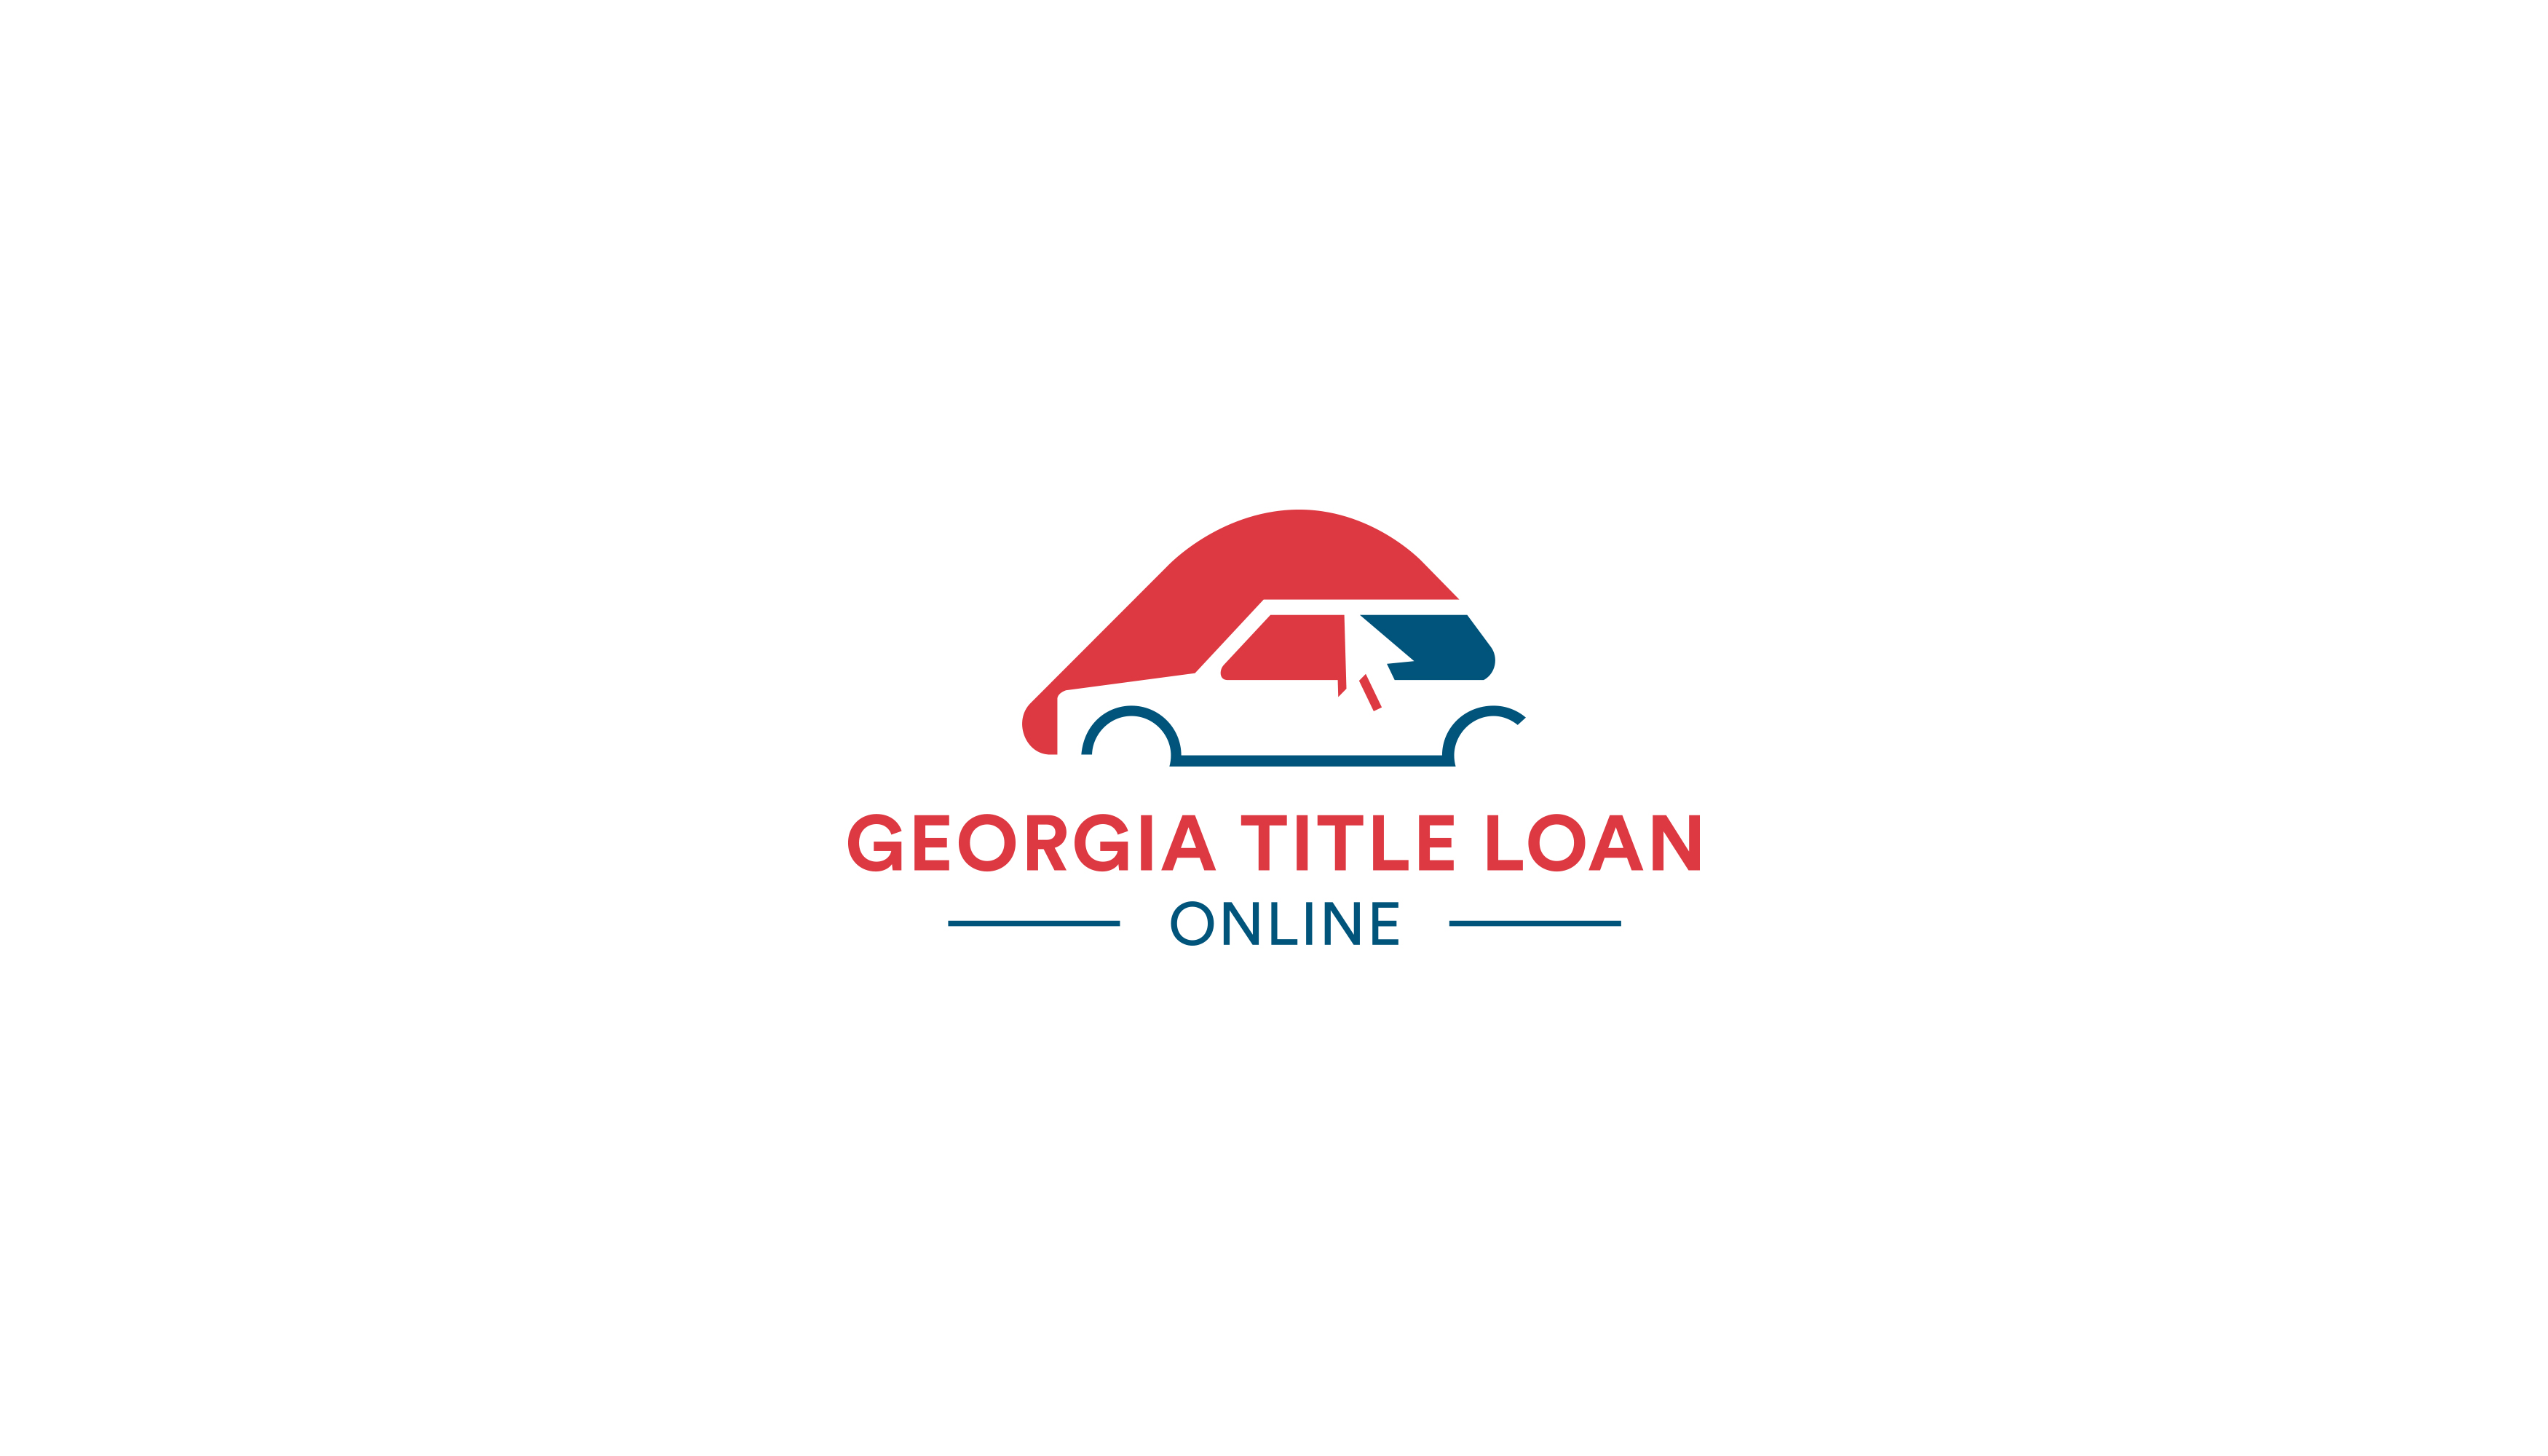 Georgia Title Loans